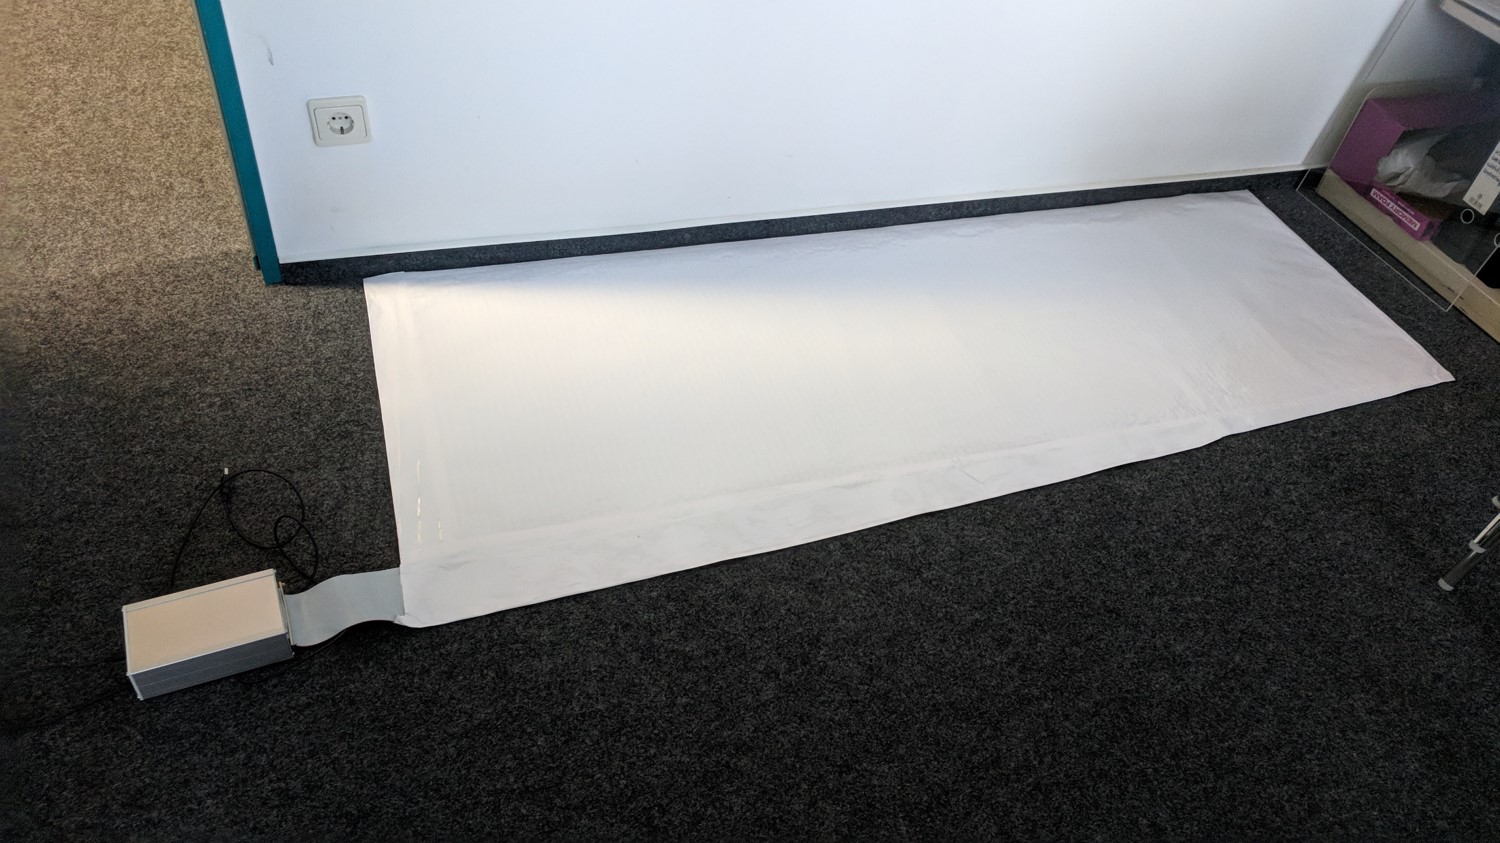 Final sensor mat prototype (to be placed below a yoga mat).